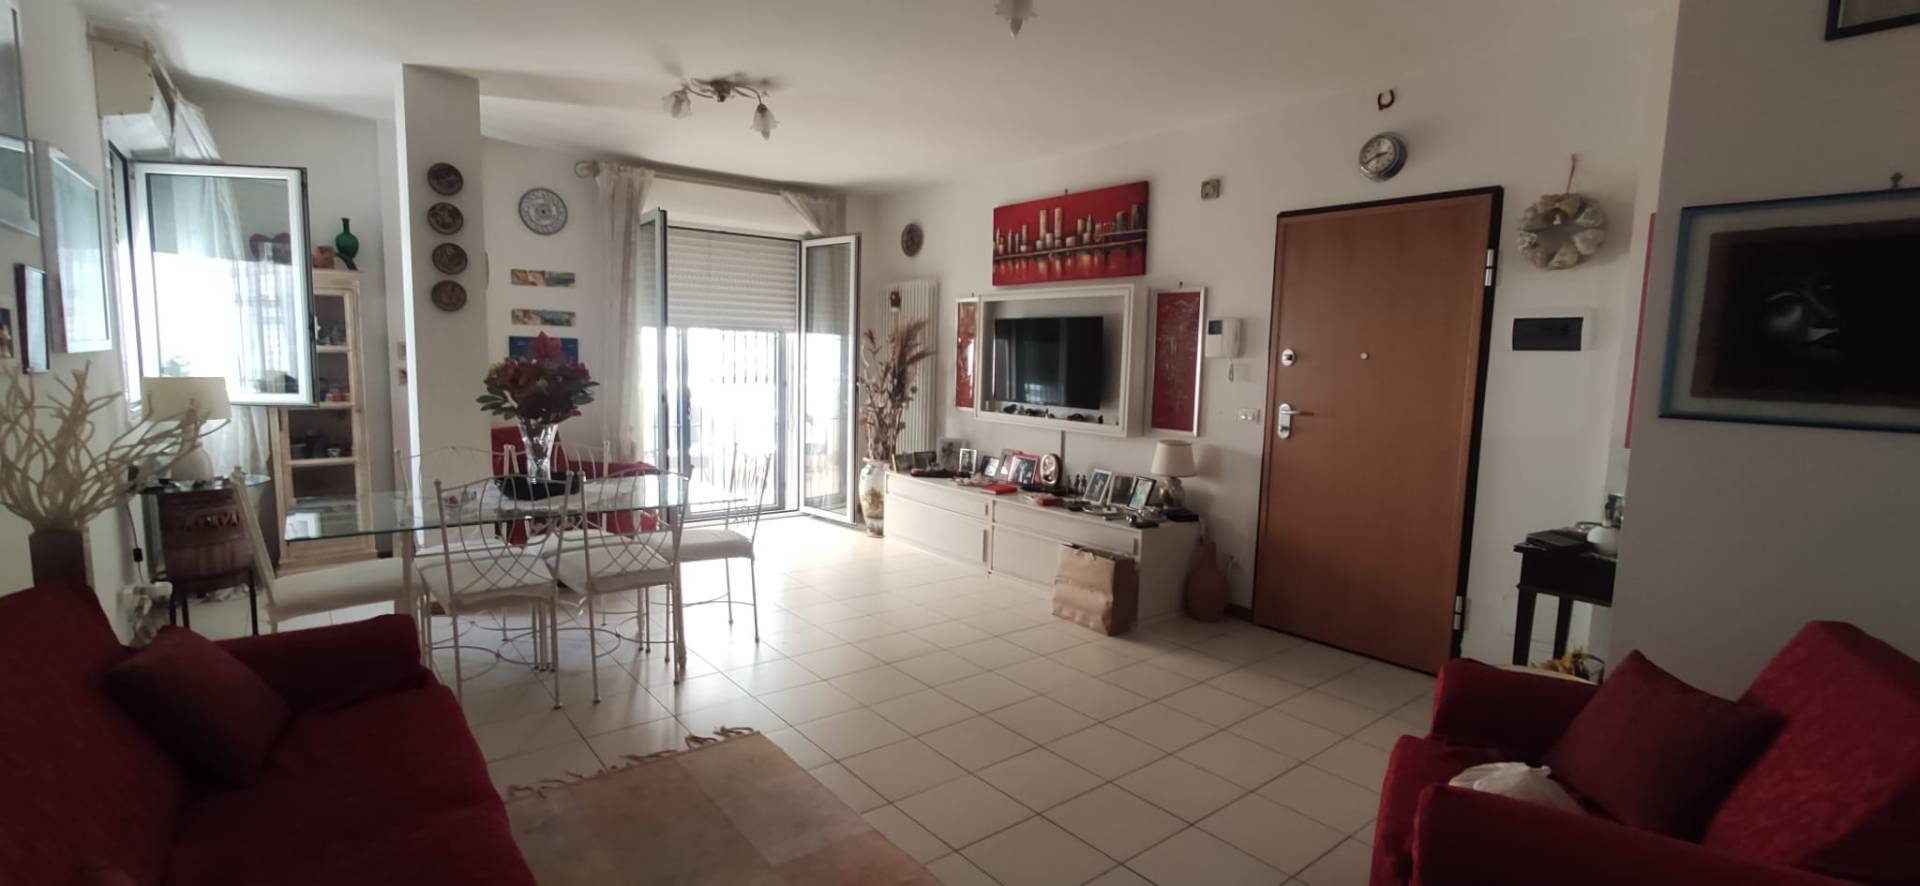 Appartamento in vendita a Tortoreto, 5 locali, prezzo € 280.000 | PortaleAgenzieImmobiliari.it